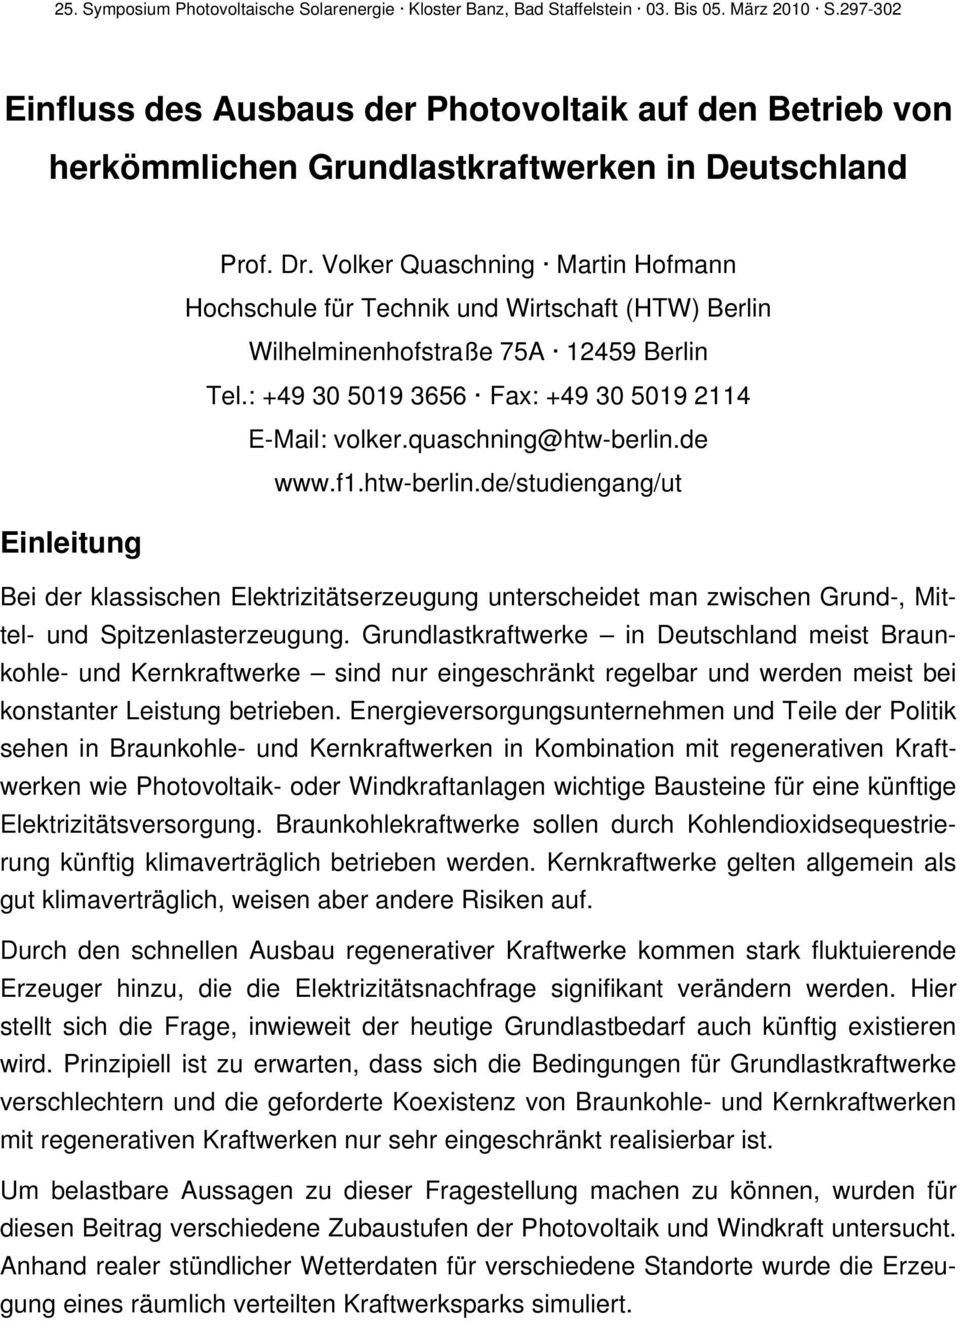 Volker Quaschning Martin Hofmann Hochschule für Technik und Wirtschaft (HTW) Berlin Wilhelminenhofstraße 75A 12459 Berlin Tel.: +49 3 519 3656 Fax: +49 3 519 2114 E-Mail: volker.quaschning@htw-berlin.